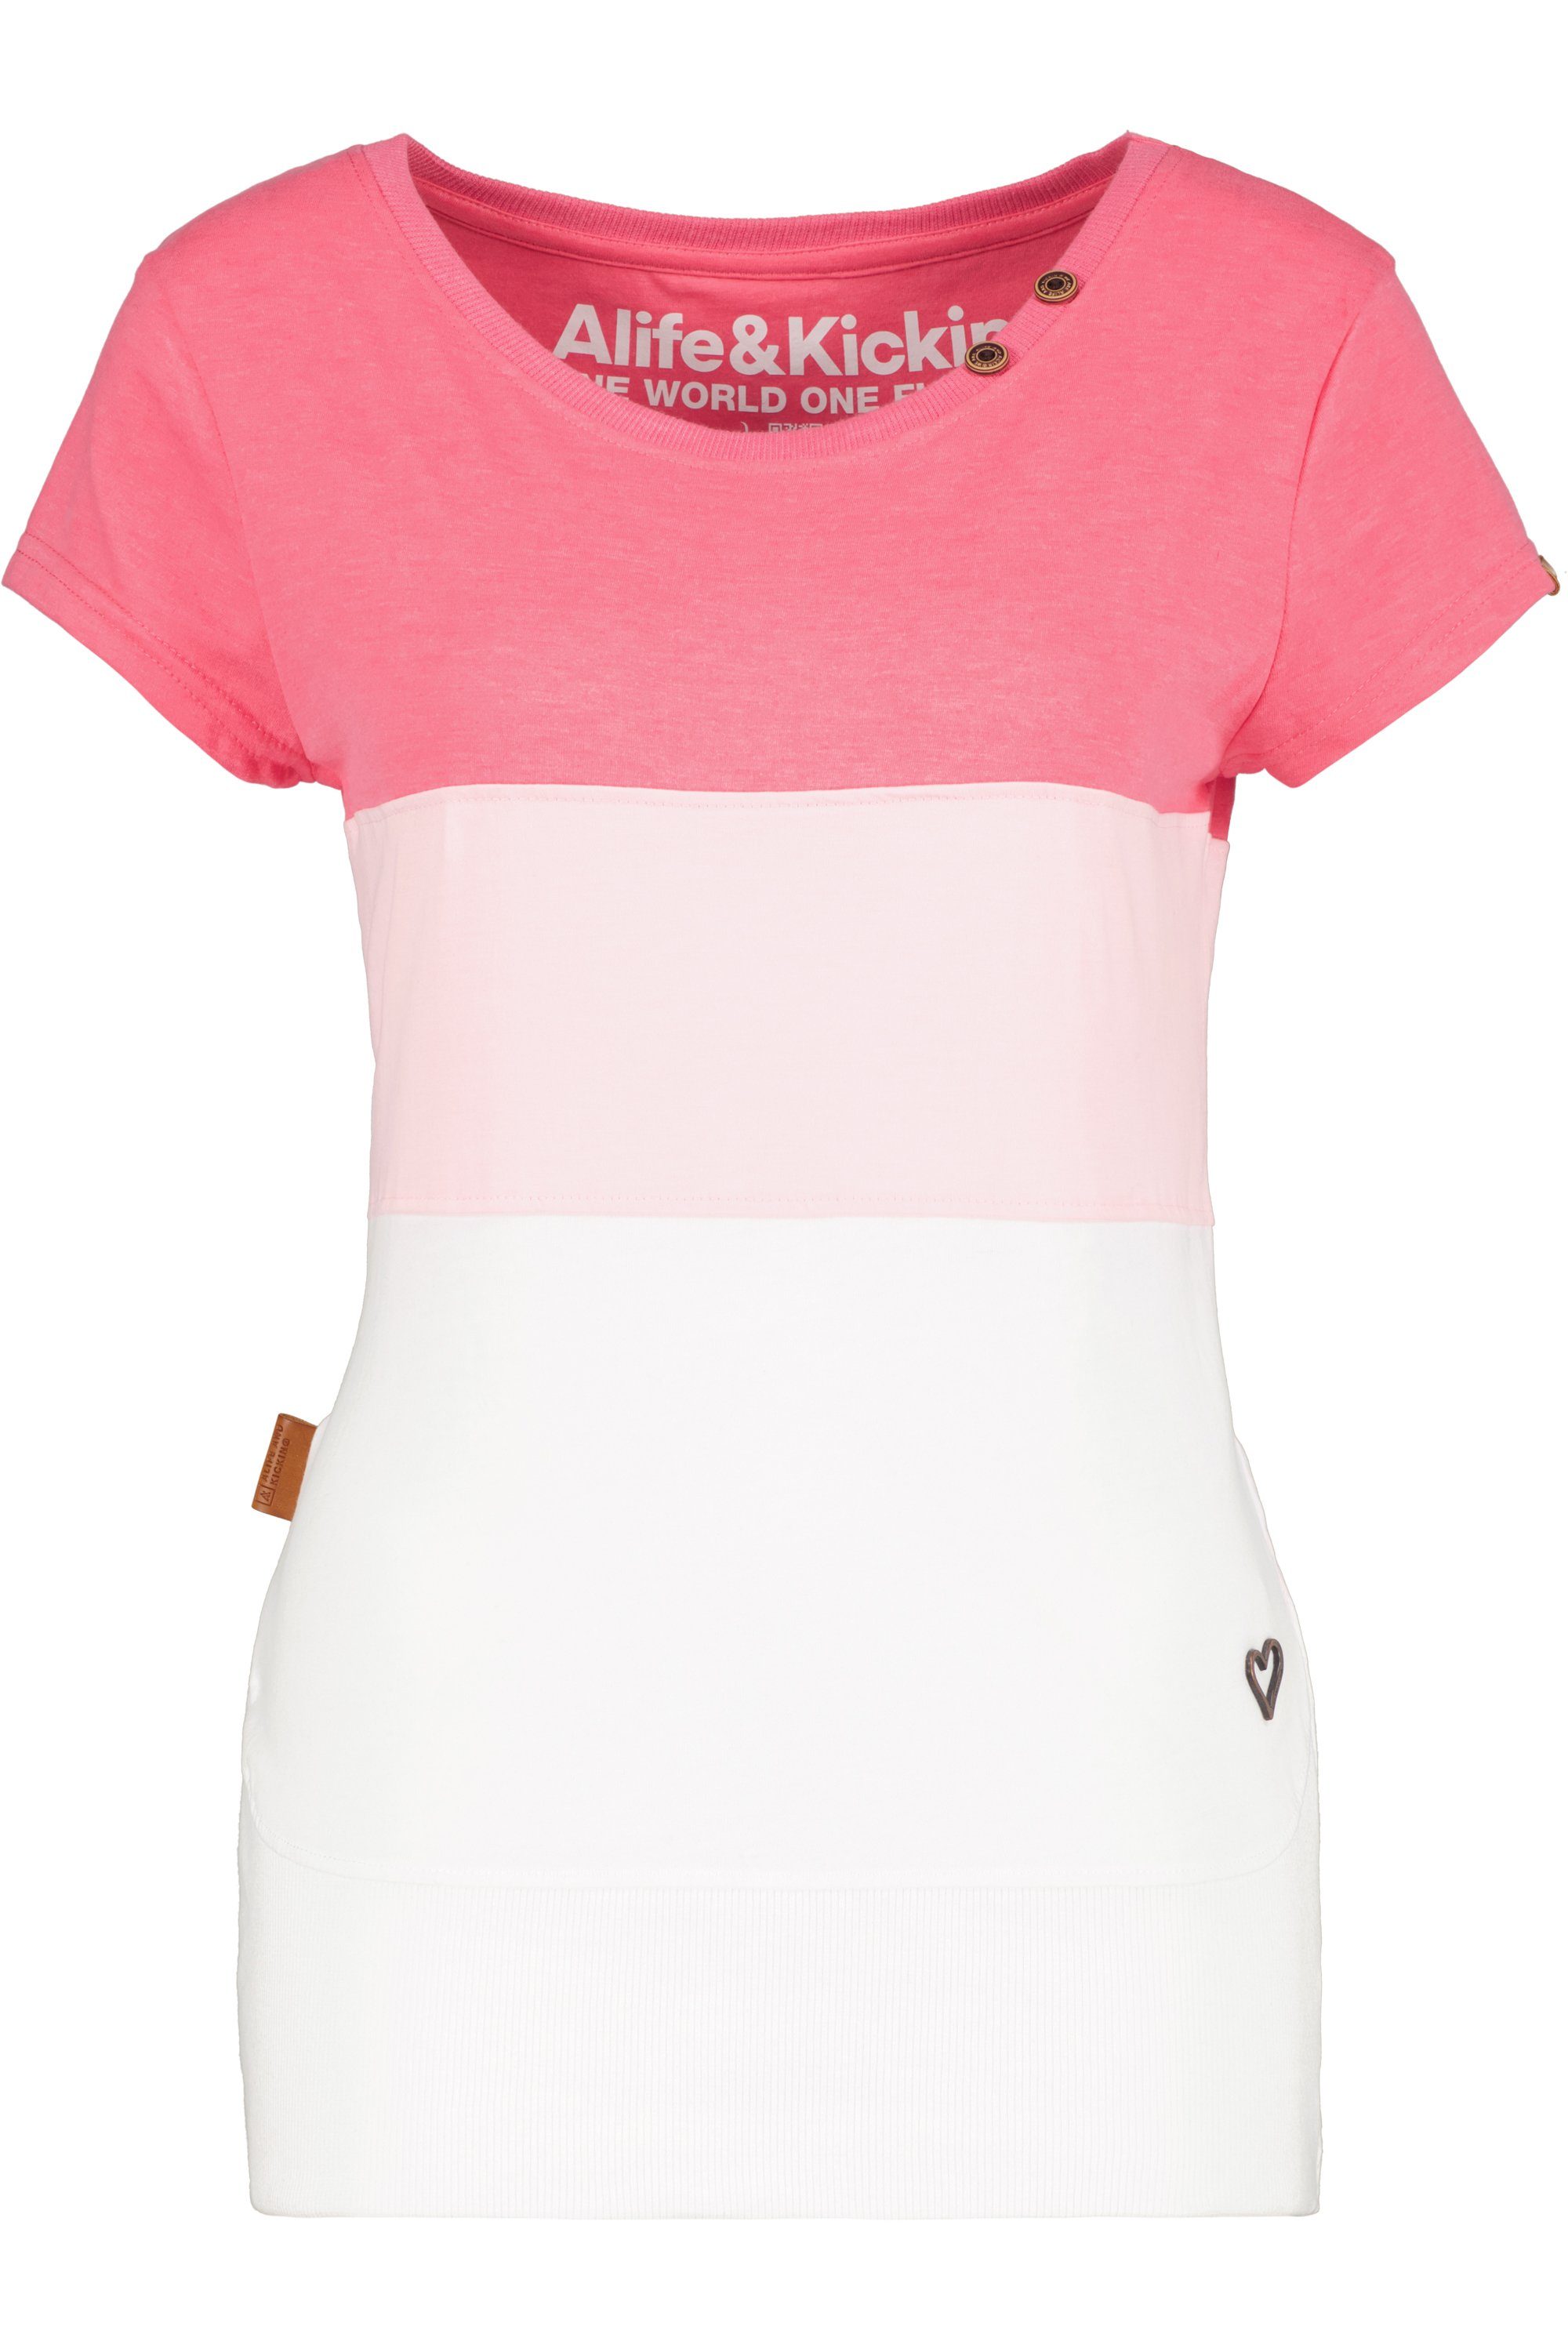 Alife & Kickin T-Shirt CoraAK Shirt Damen flamingo T-Shirt